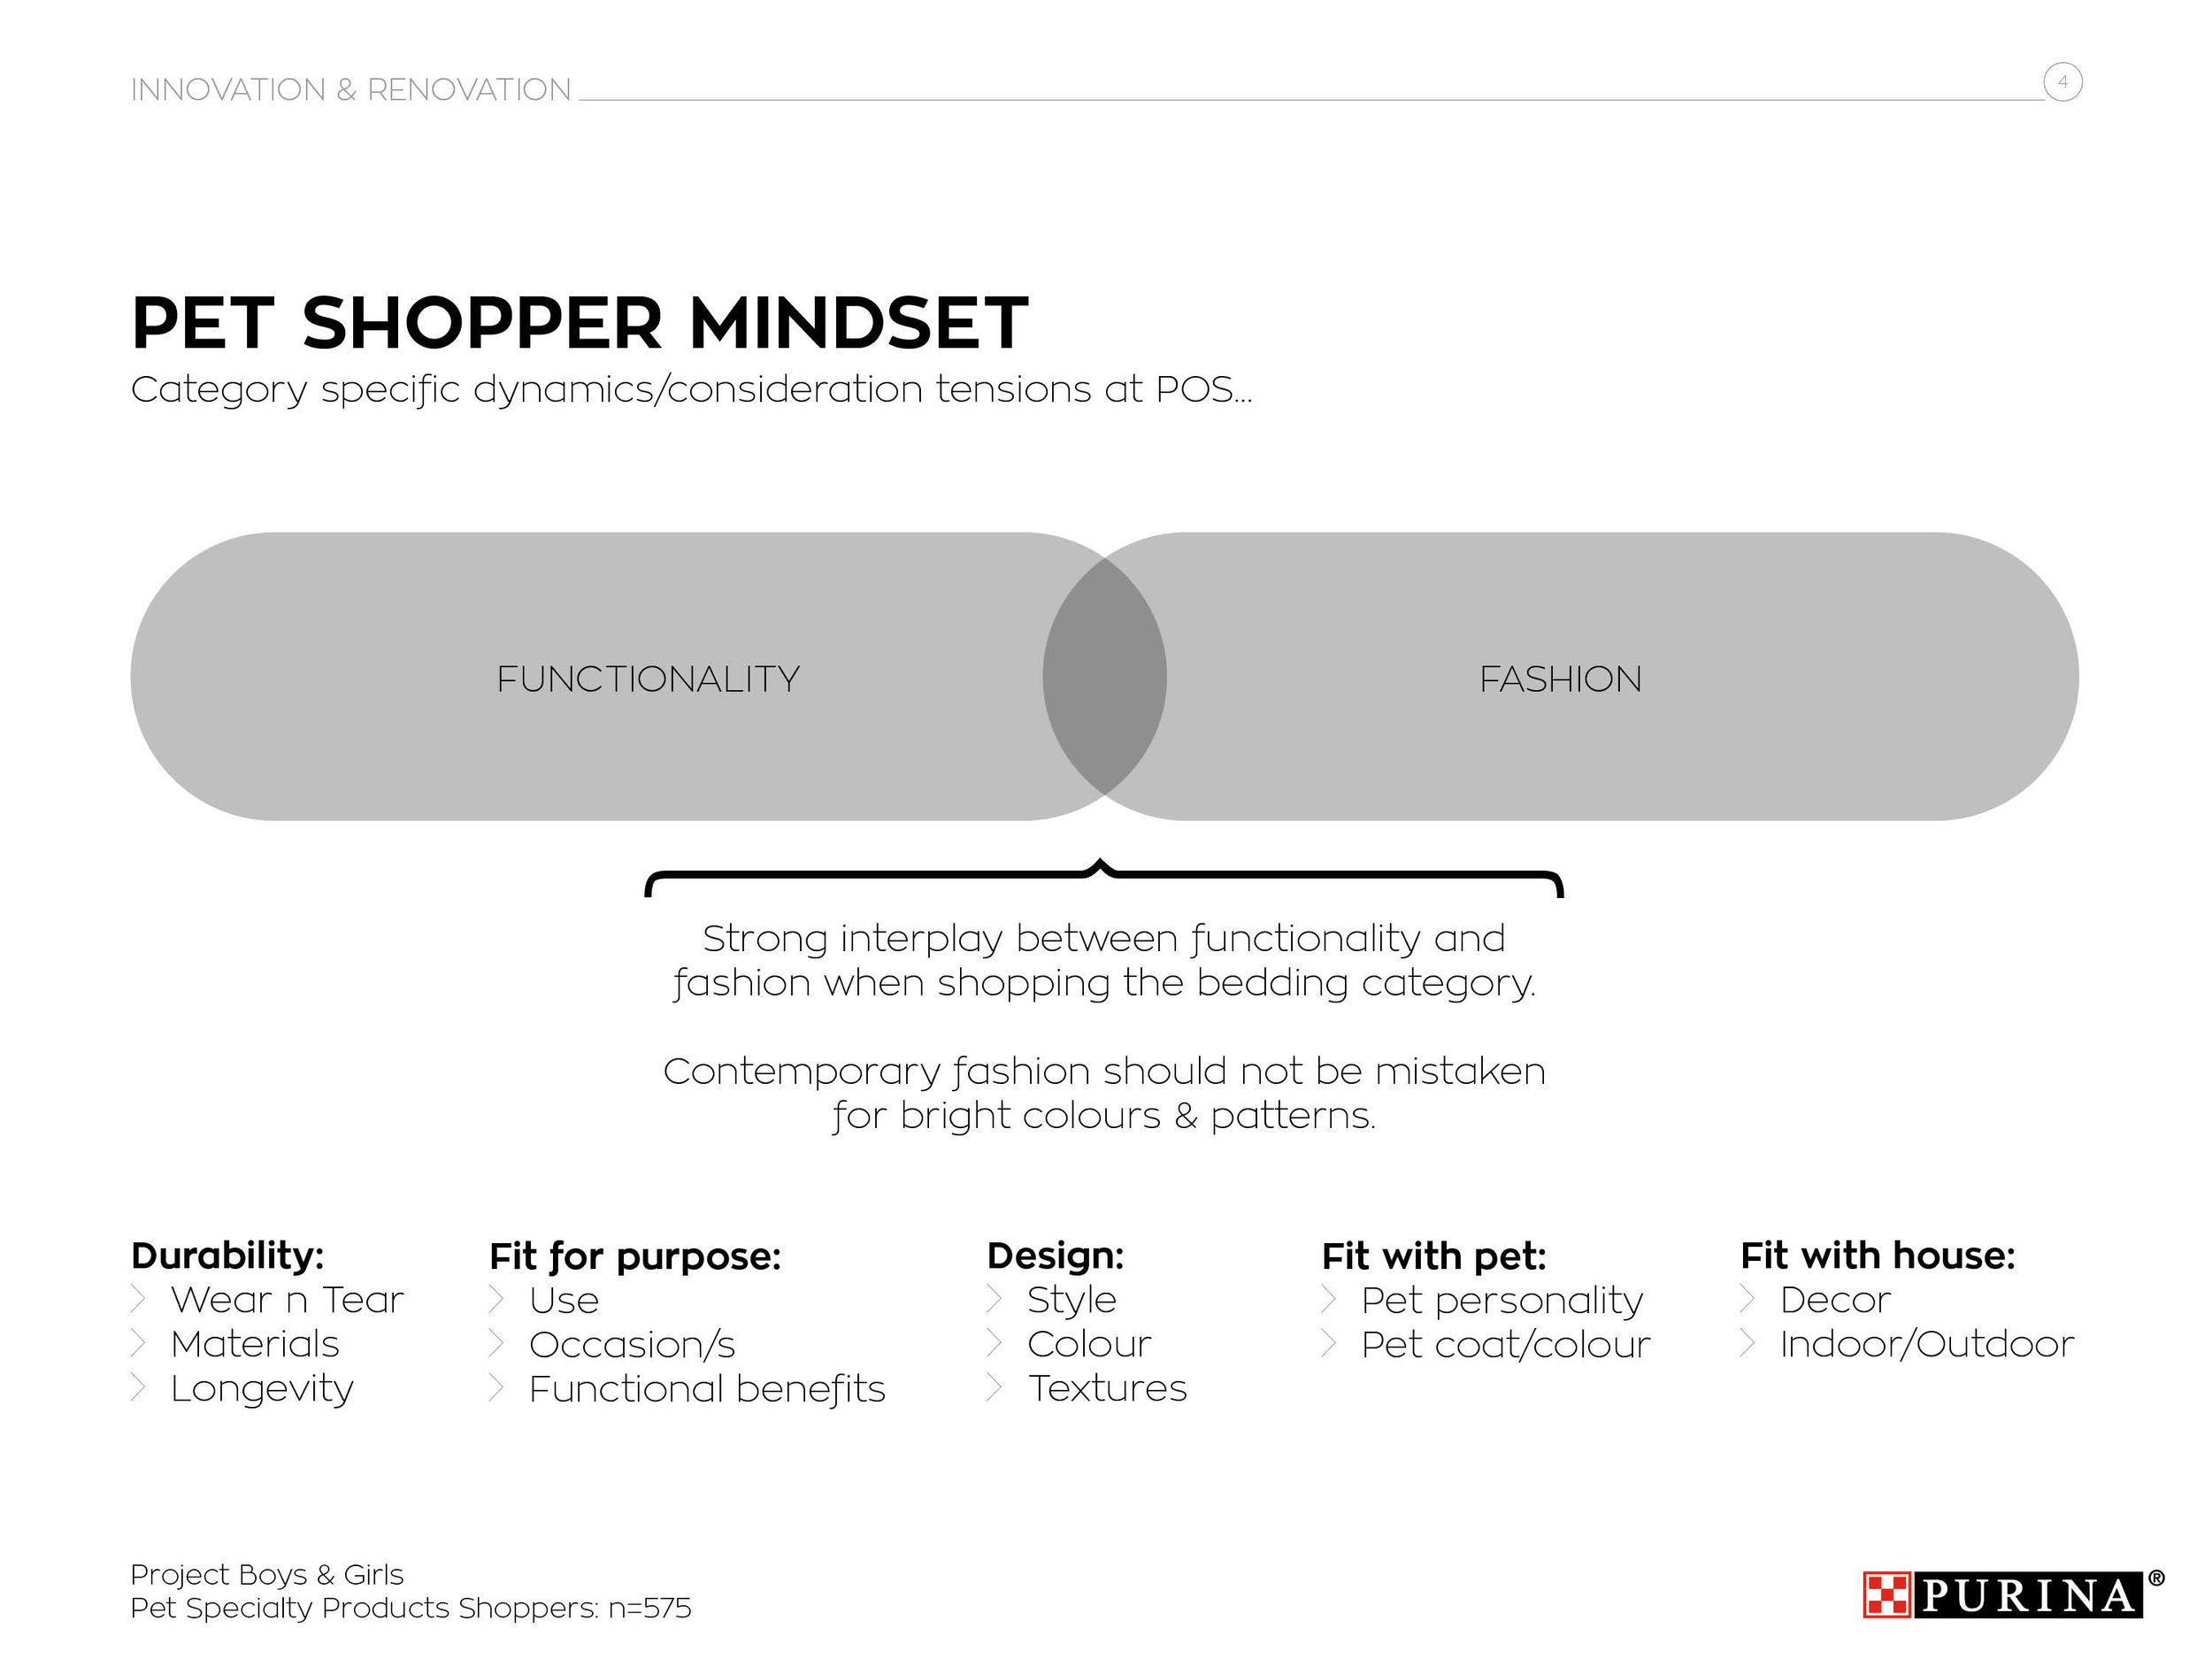 AFTER Purina Pet Shopper Mindset slide (Copy)